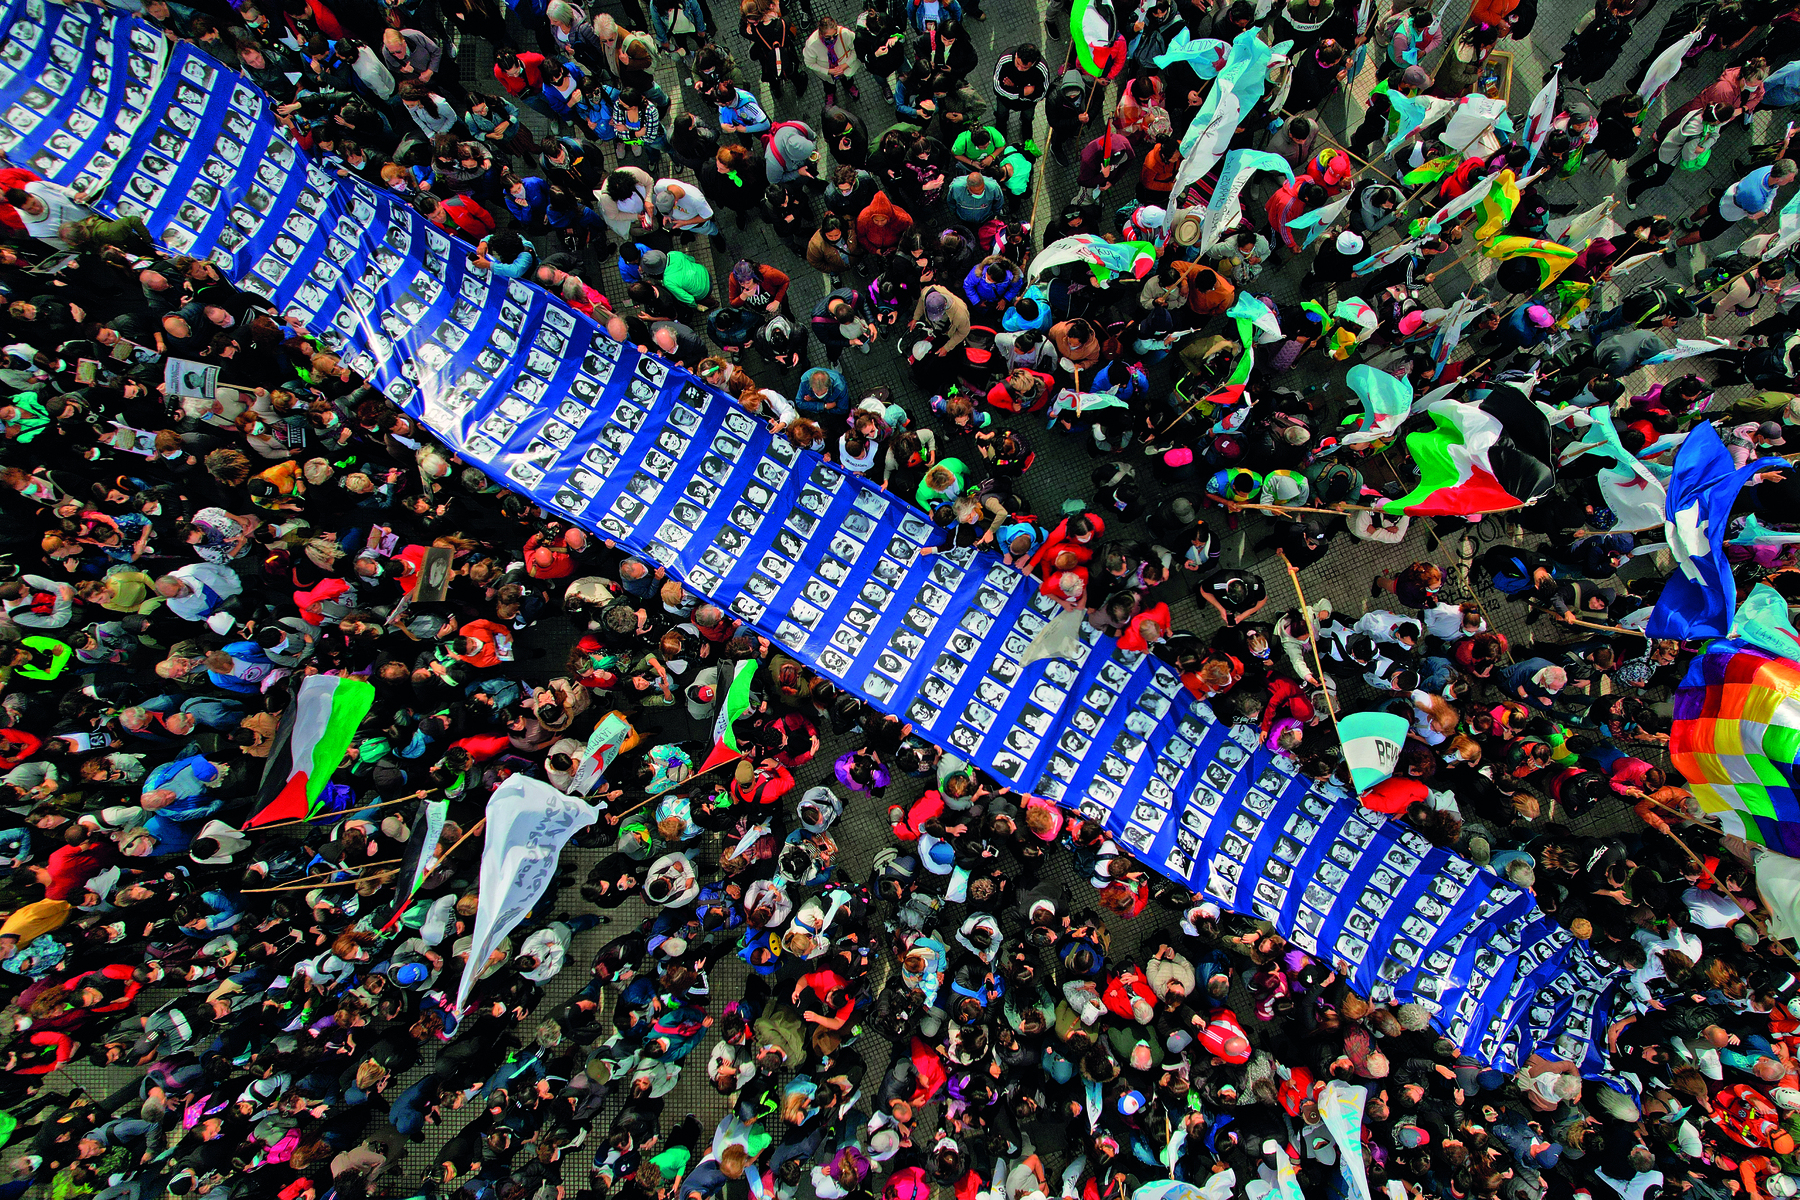 Fotografia. Vista aérea de uma multidão de pessoas em manifestação, portando faixas e bandeiras. No centro da imagem, uma longa faixa na cor azul com fotografias em preto e branco com retratos de centenas de pessoas.